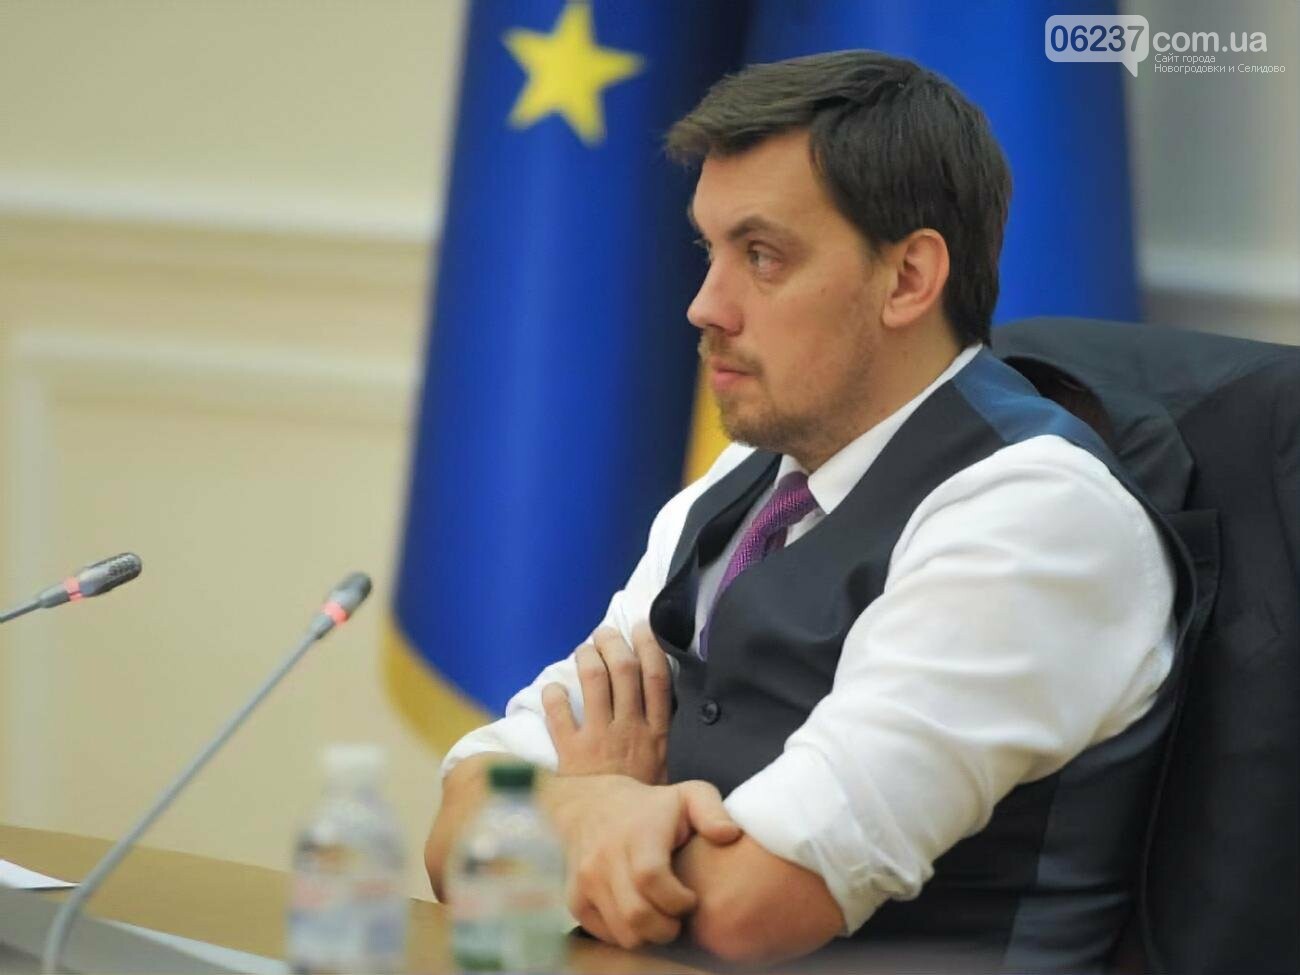 Гончарук анонсировал смену руководства Укрзализныци из-за коррупции, фото-1